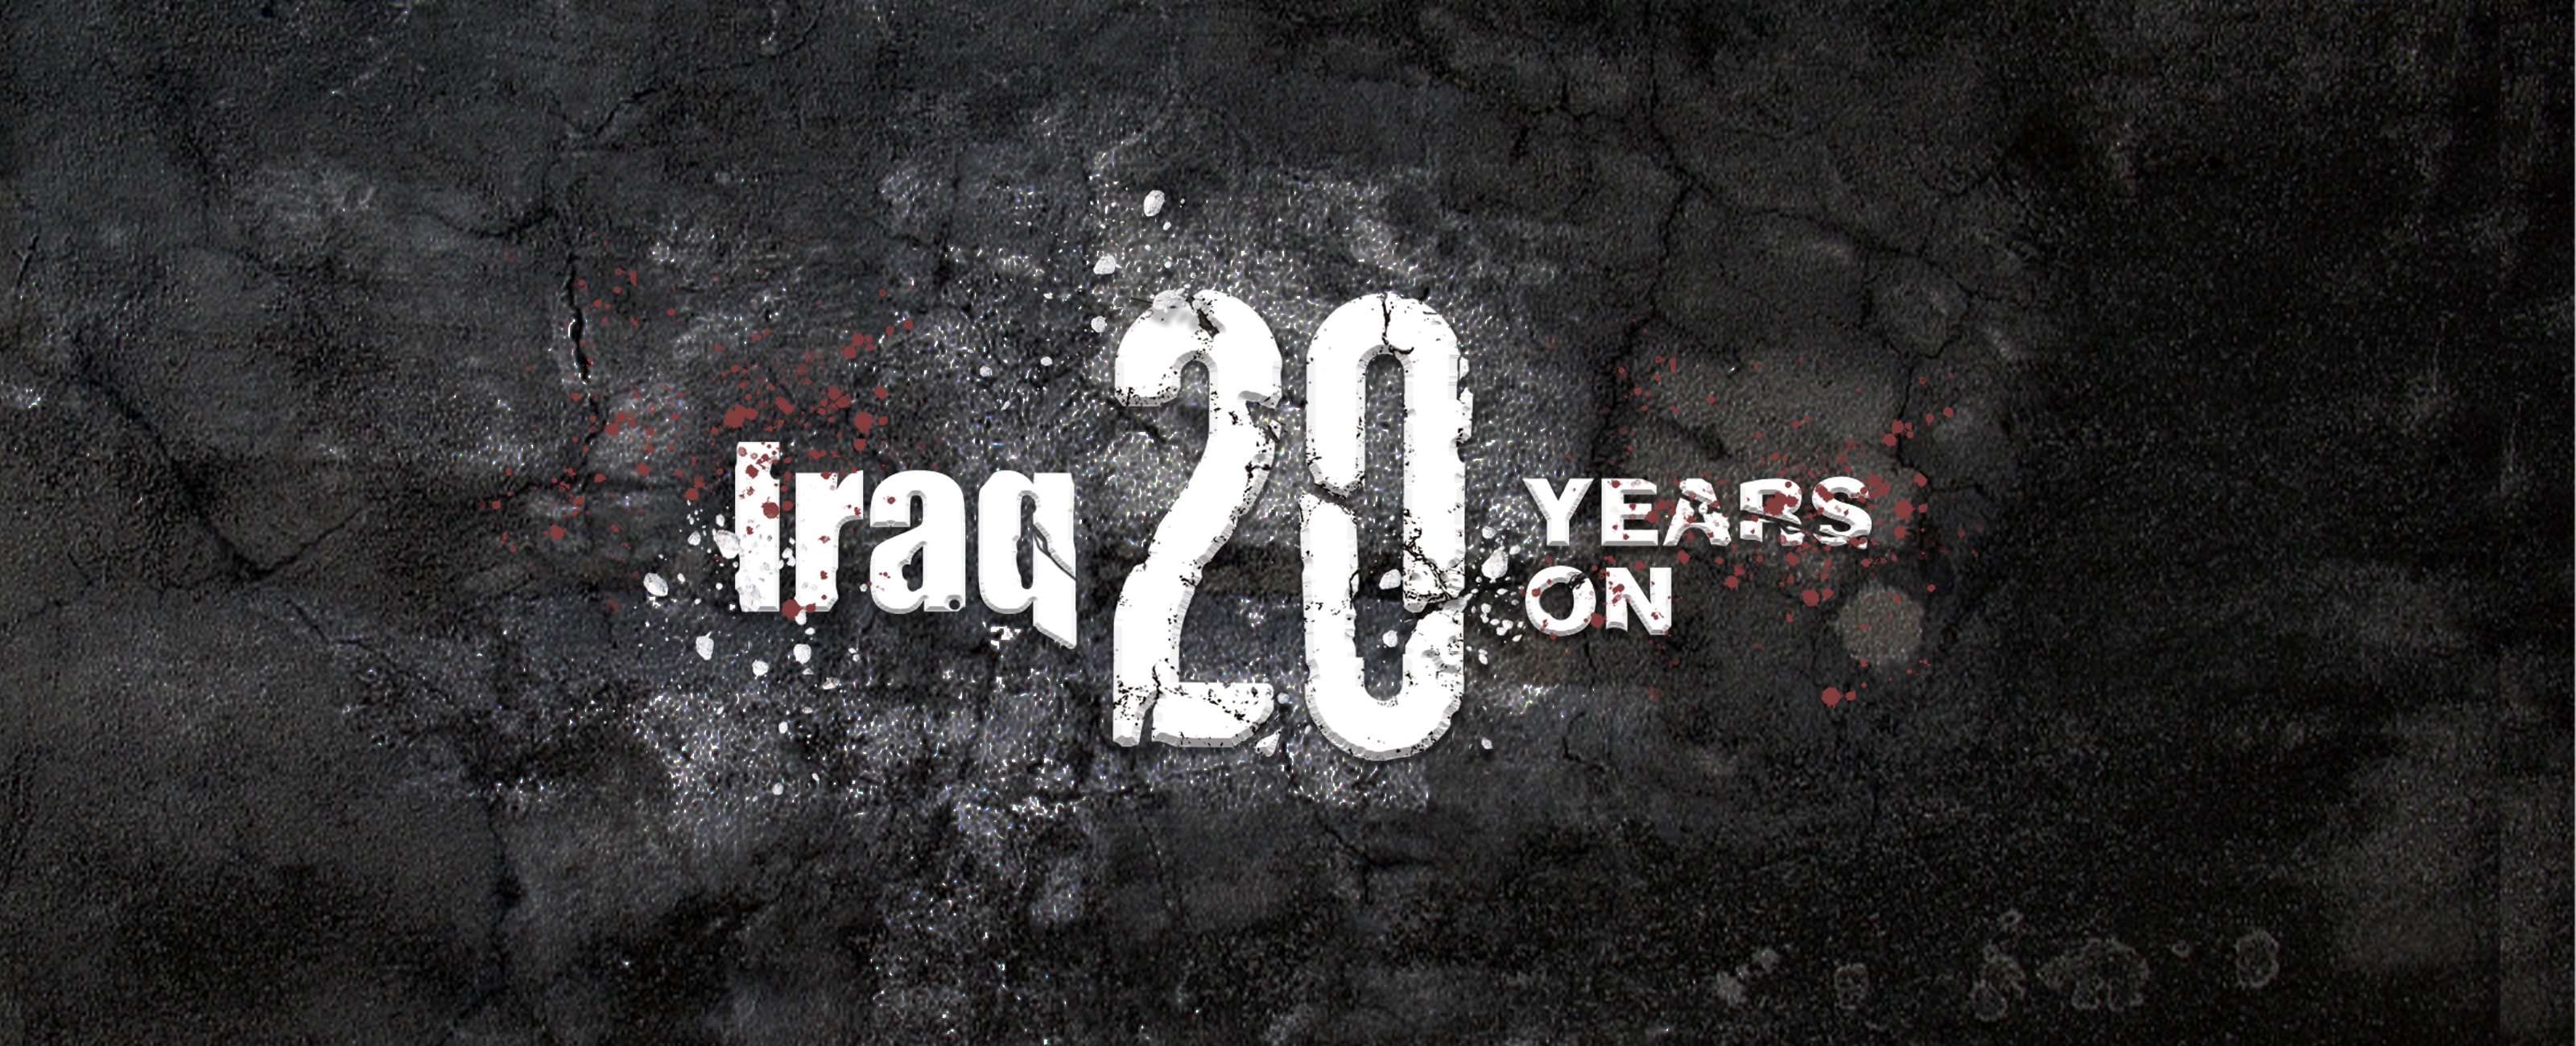 Iraq 20 years